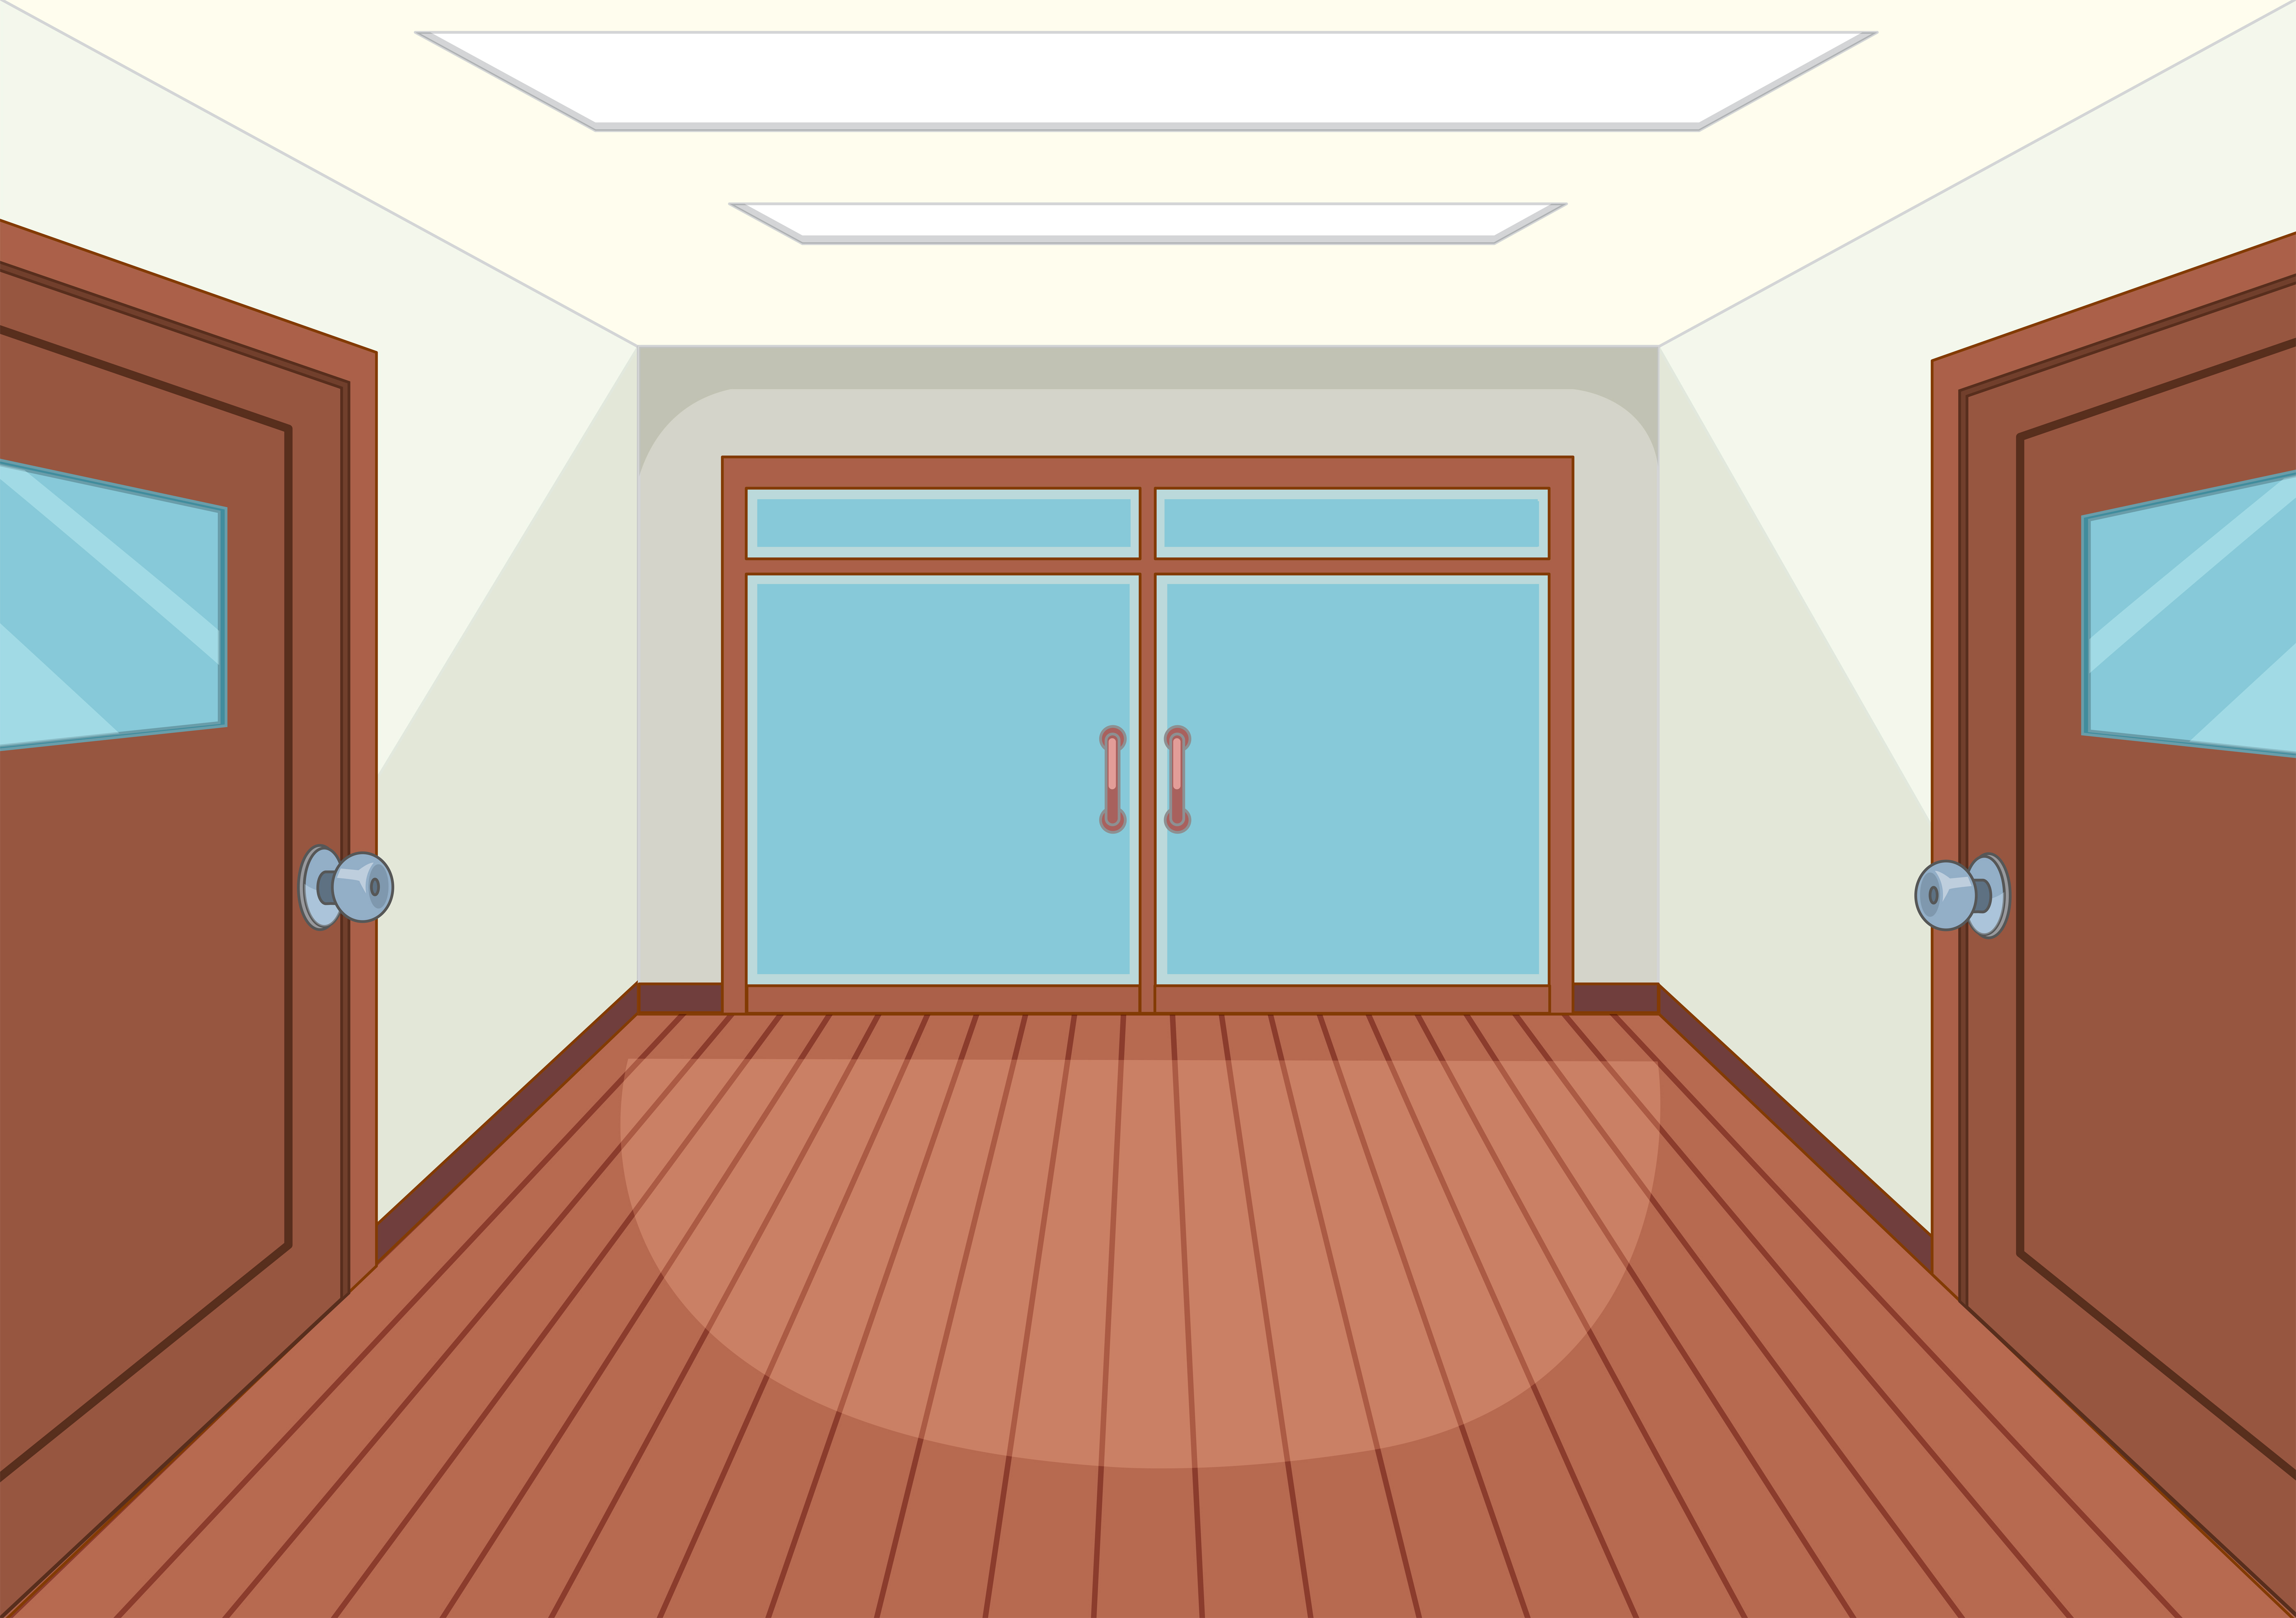 An empty room interior Download Free Vectors Clipart 